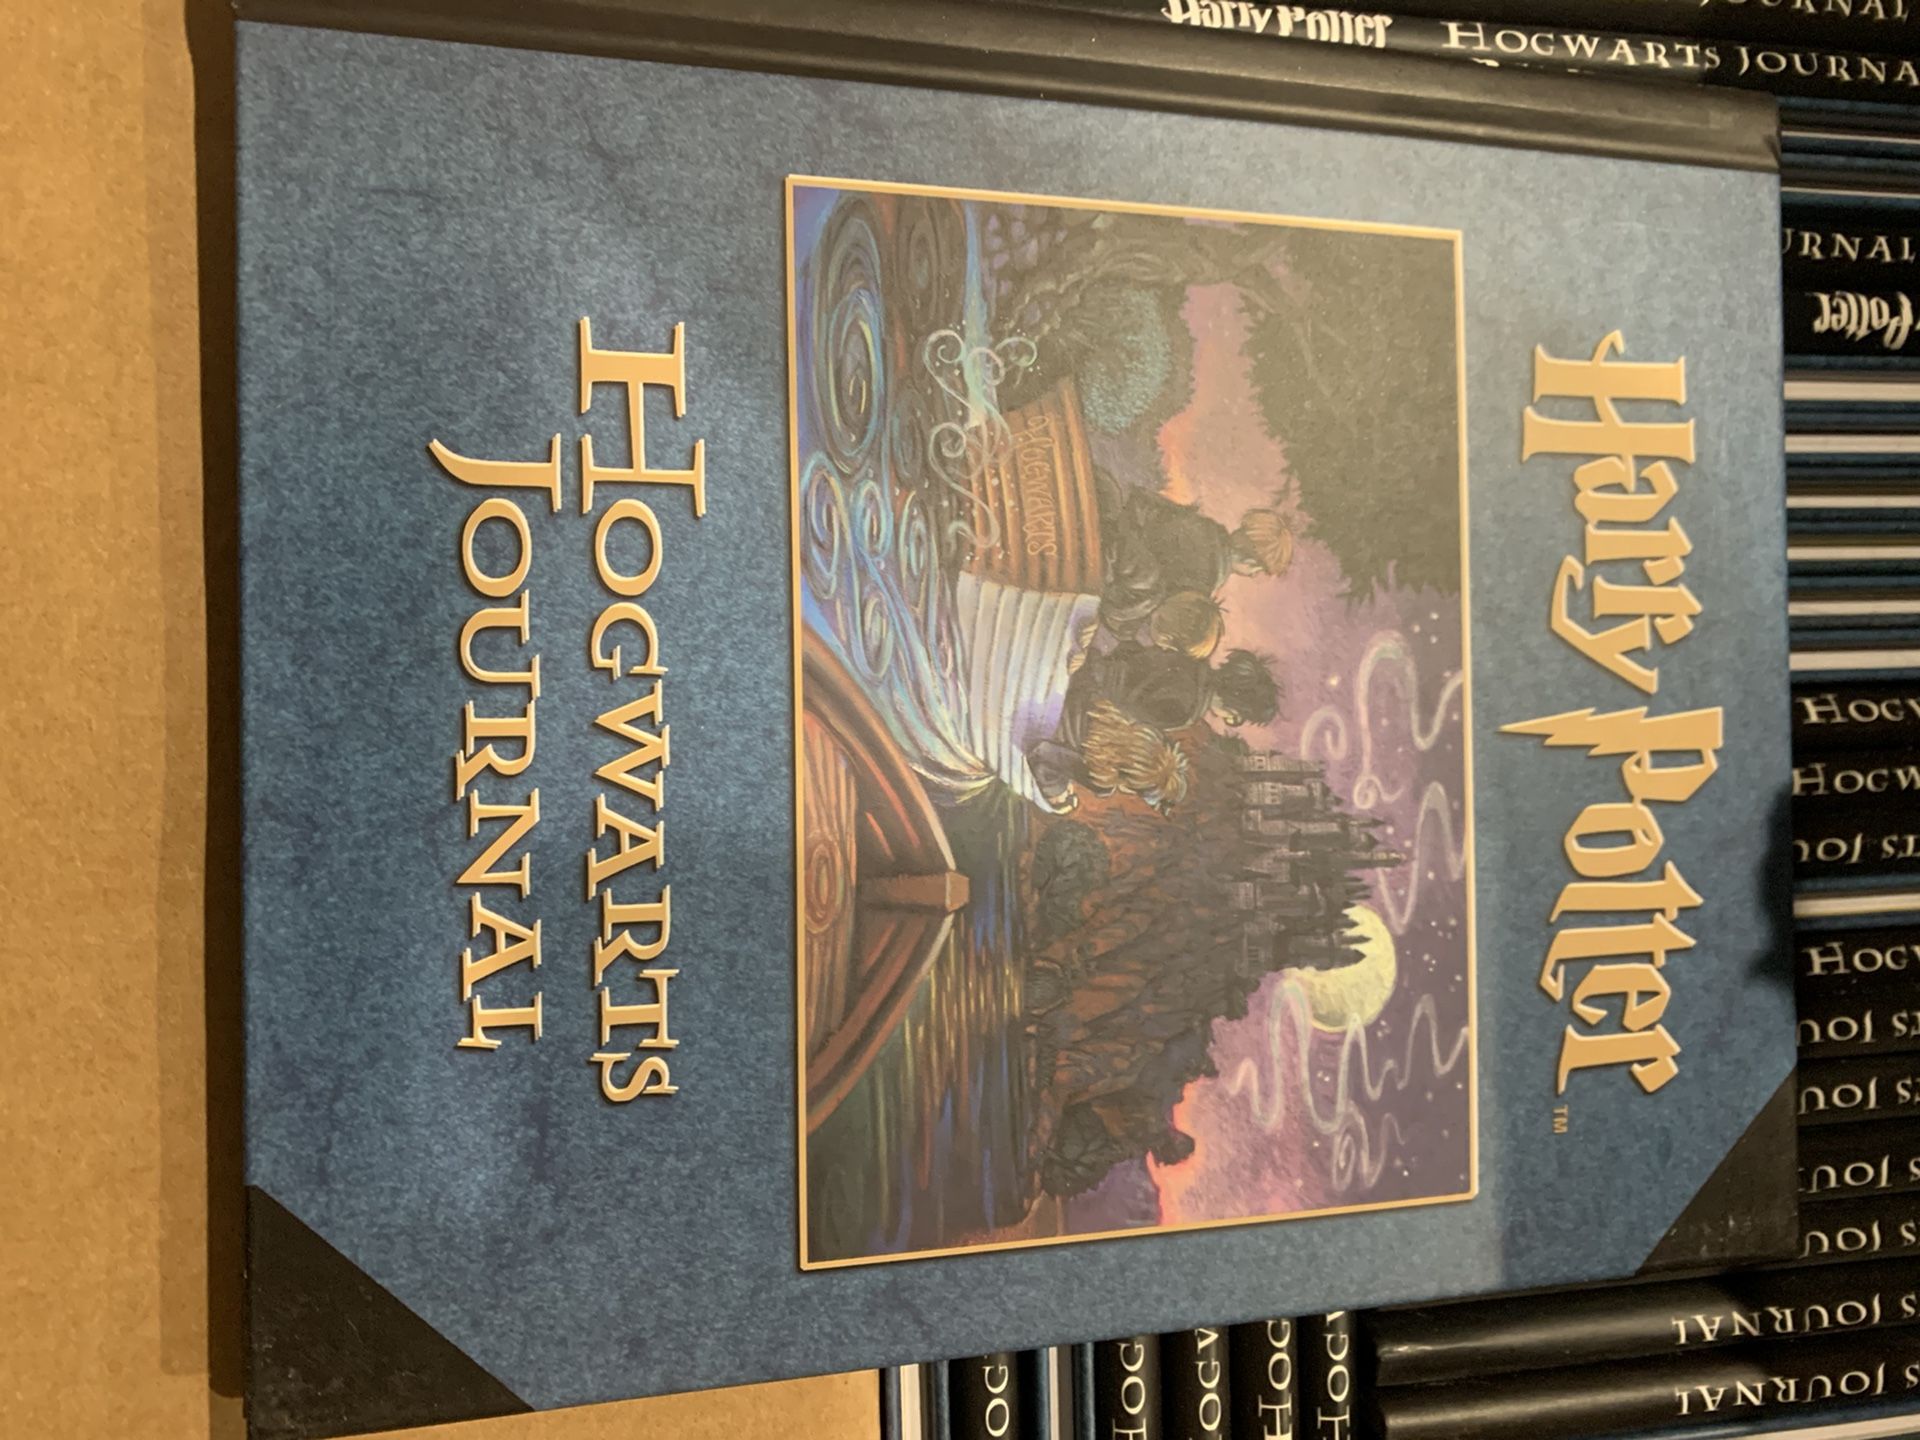 Harry Potter hogwarts journals